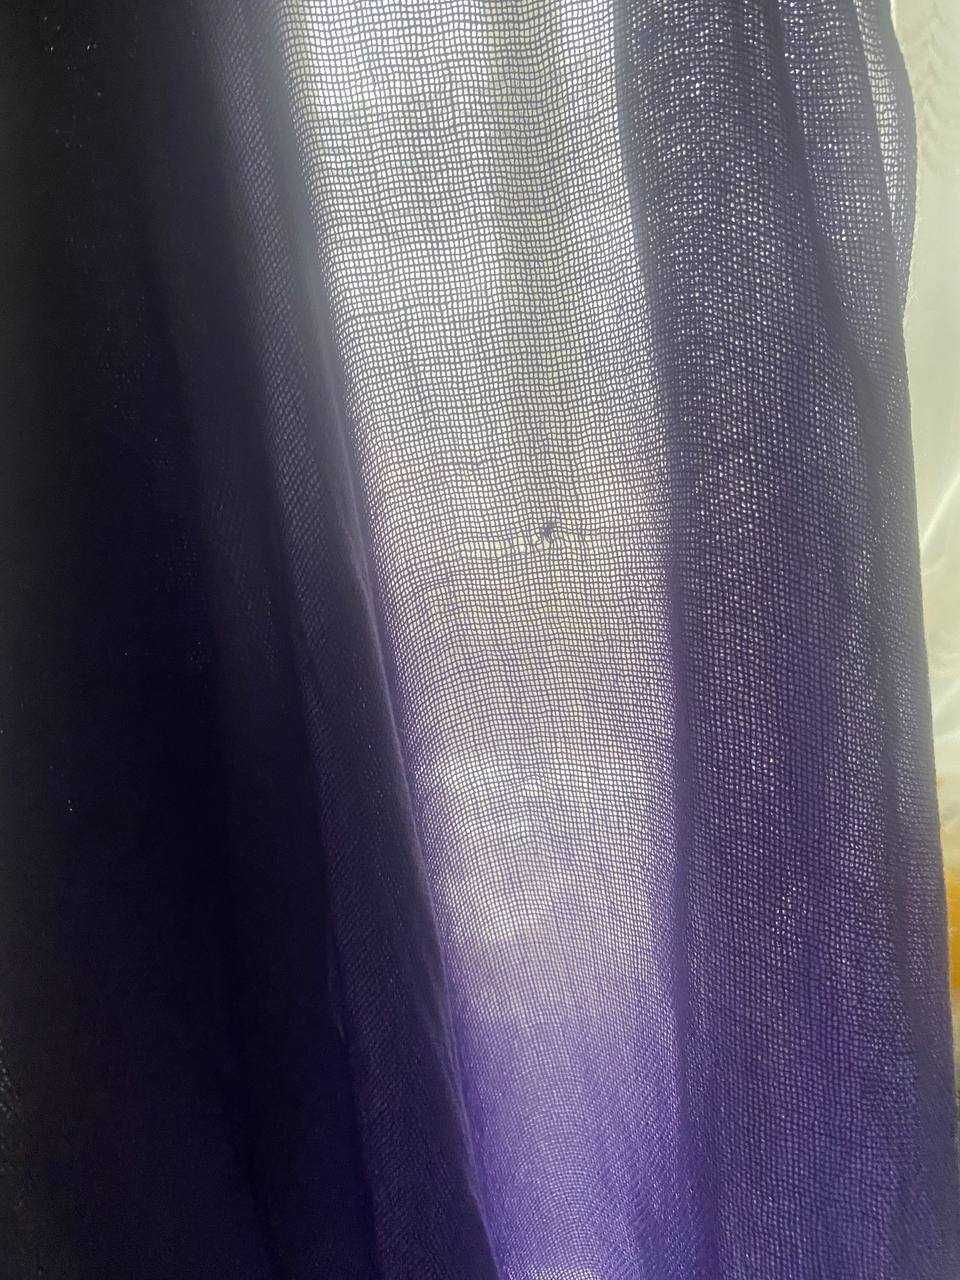 Сиреневый фиолетовый шарф